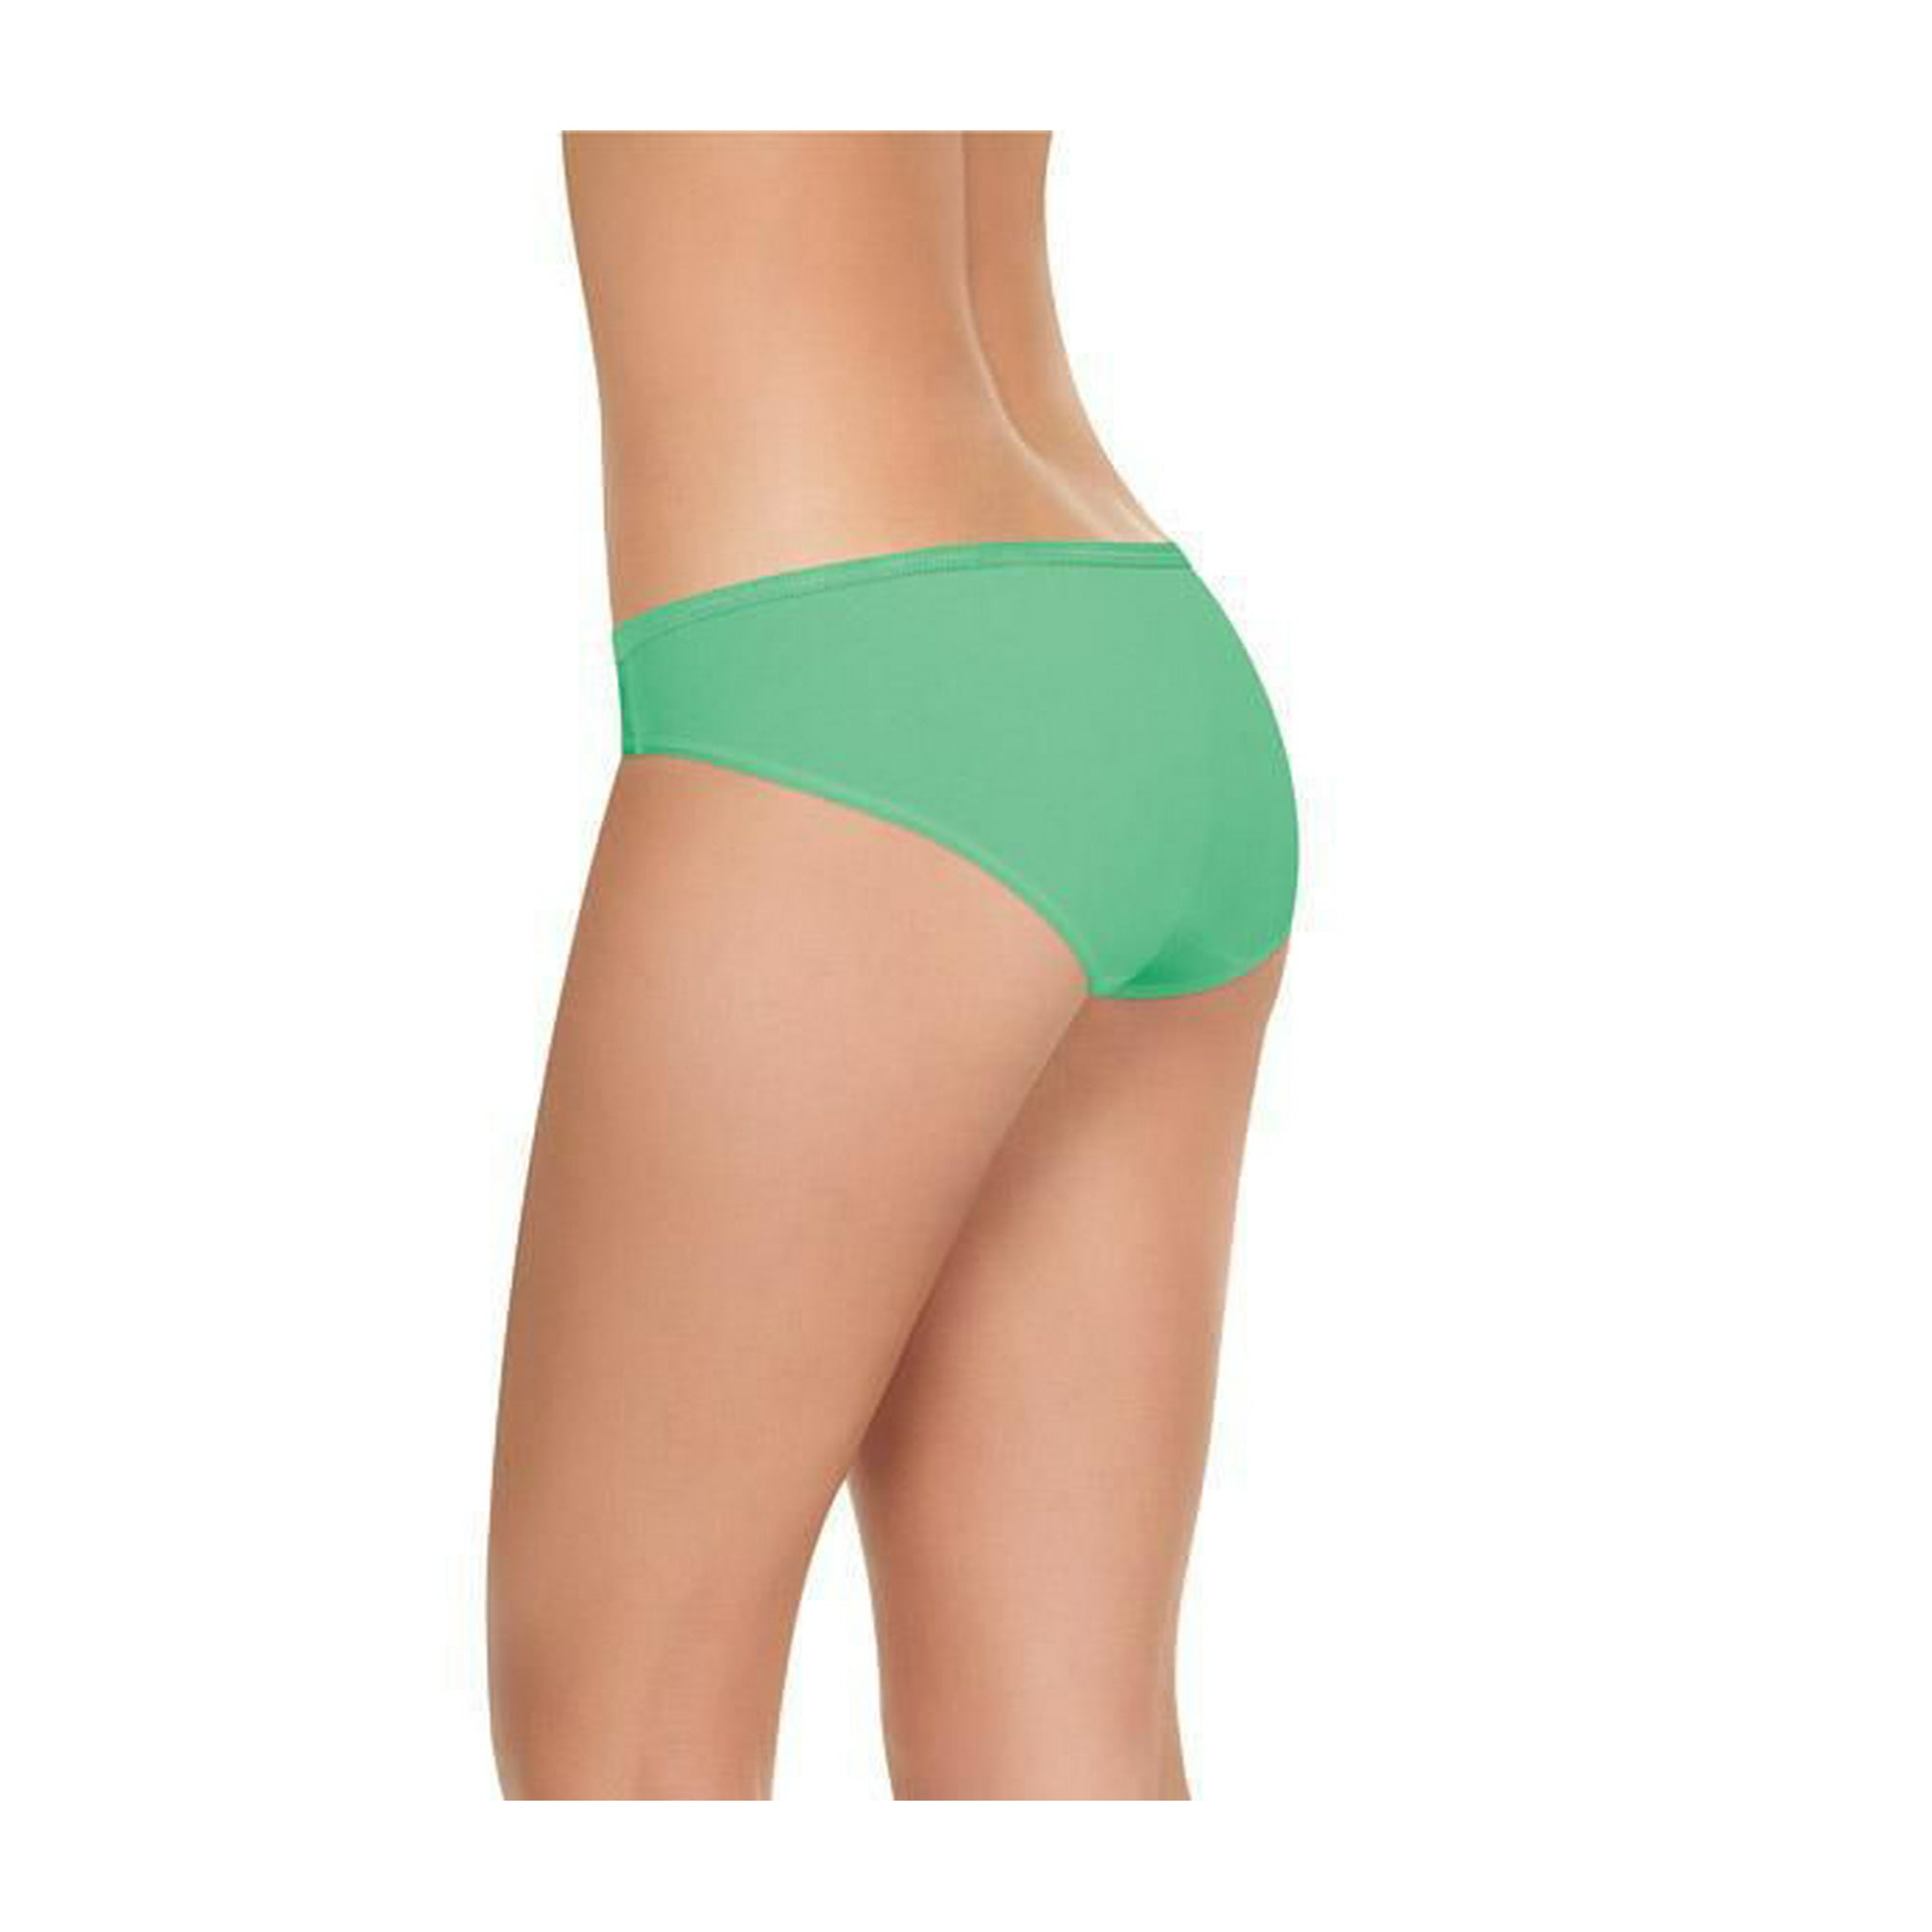 43% OFF on Hanes Women's 100% Cotton Bikini Underwear Ladies Panties on